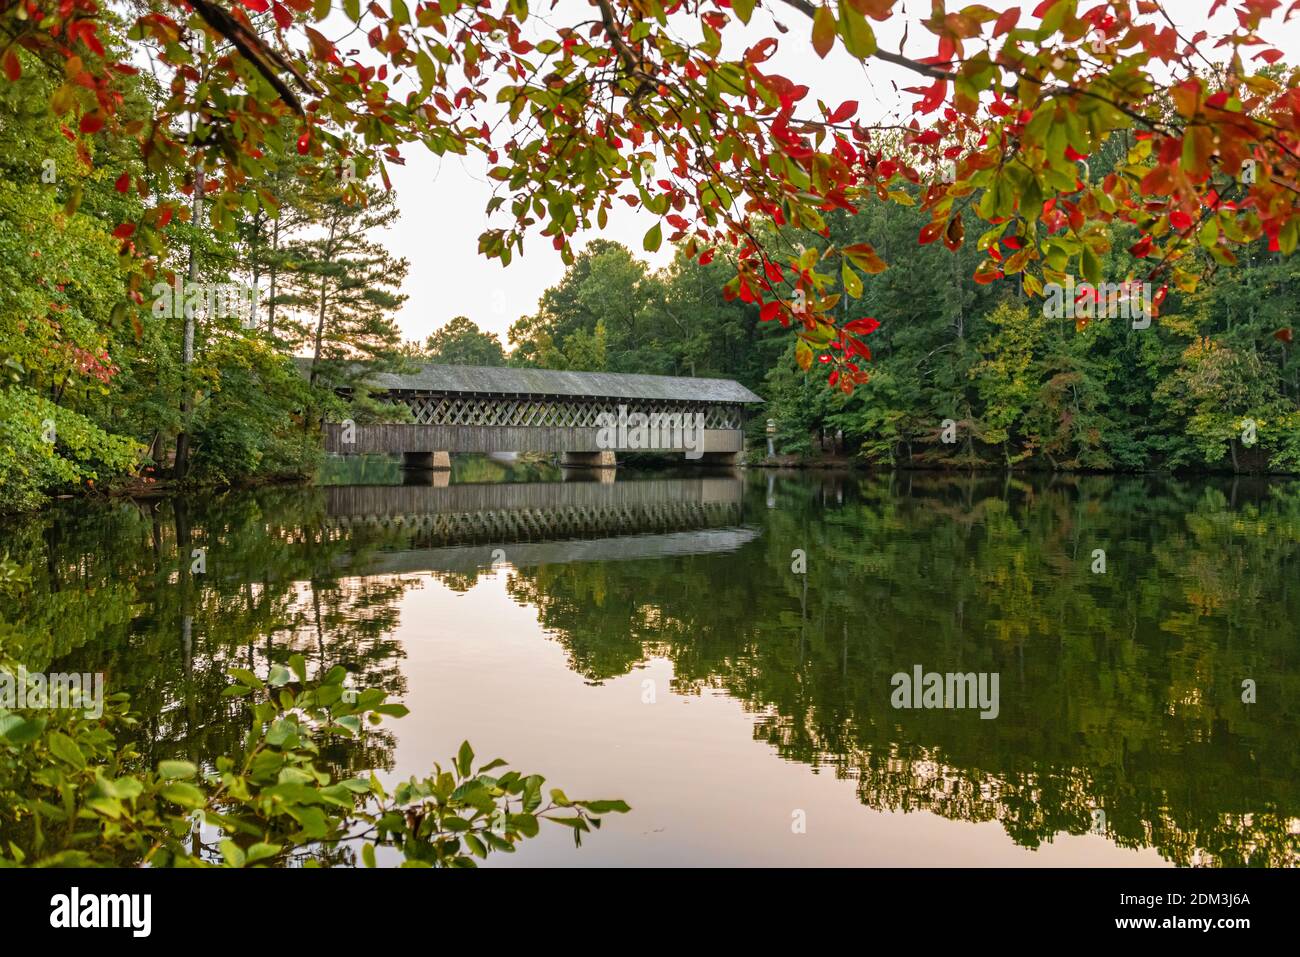 Paisaje escénico con puente cubierto en el Lago Stone Mountain en el Parque Stone Mountain cerca de Atlanta, Georgia. (EE.UU.) Foto de stock